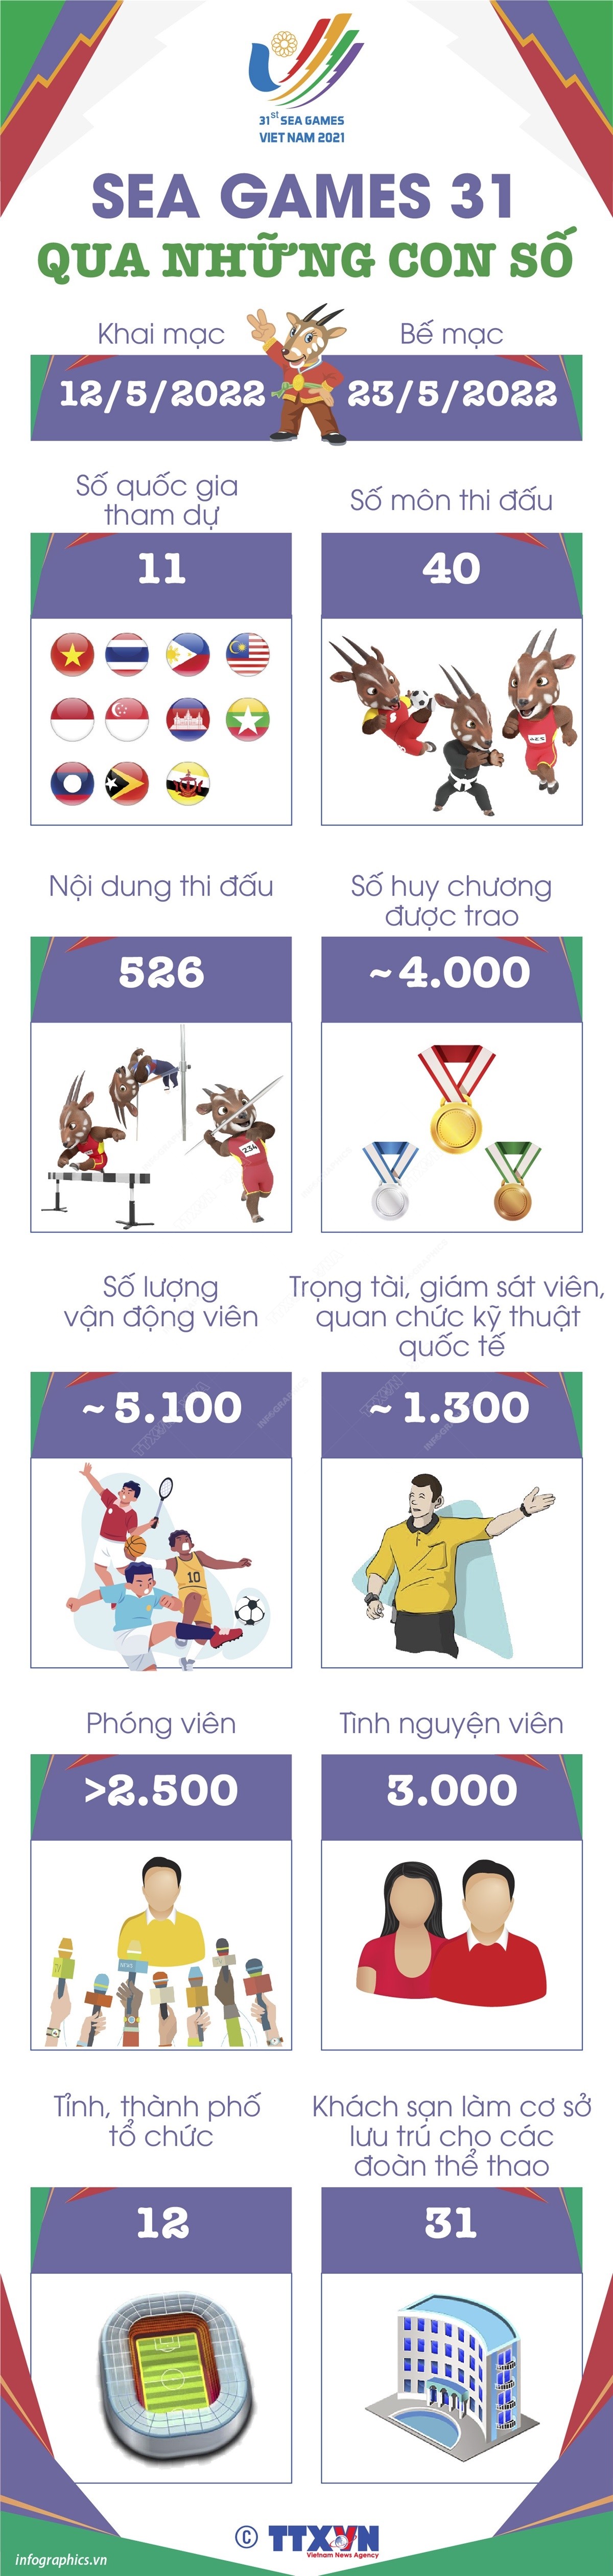 infographic-sea-games-31-qua-nhung-con-so-1651647242.jpeg